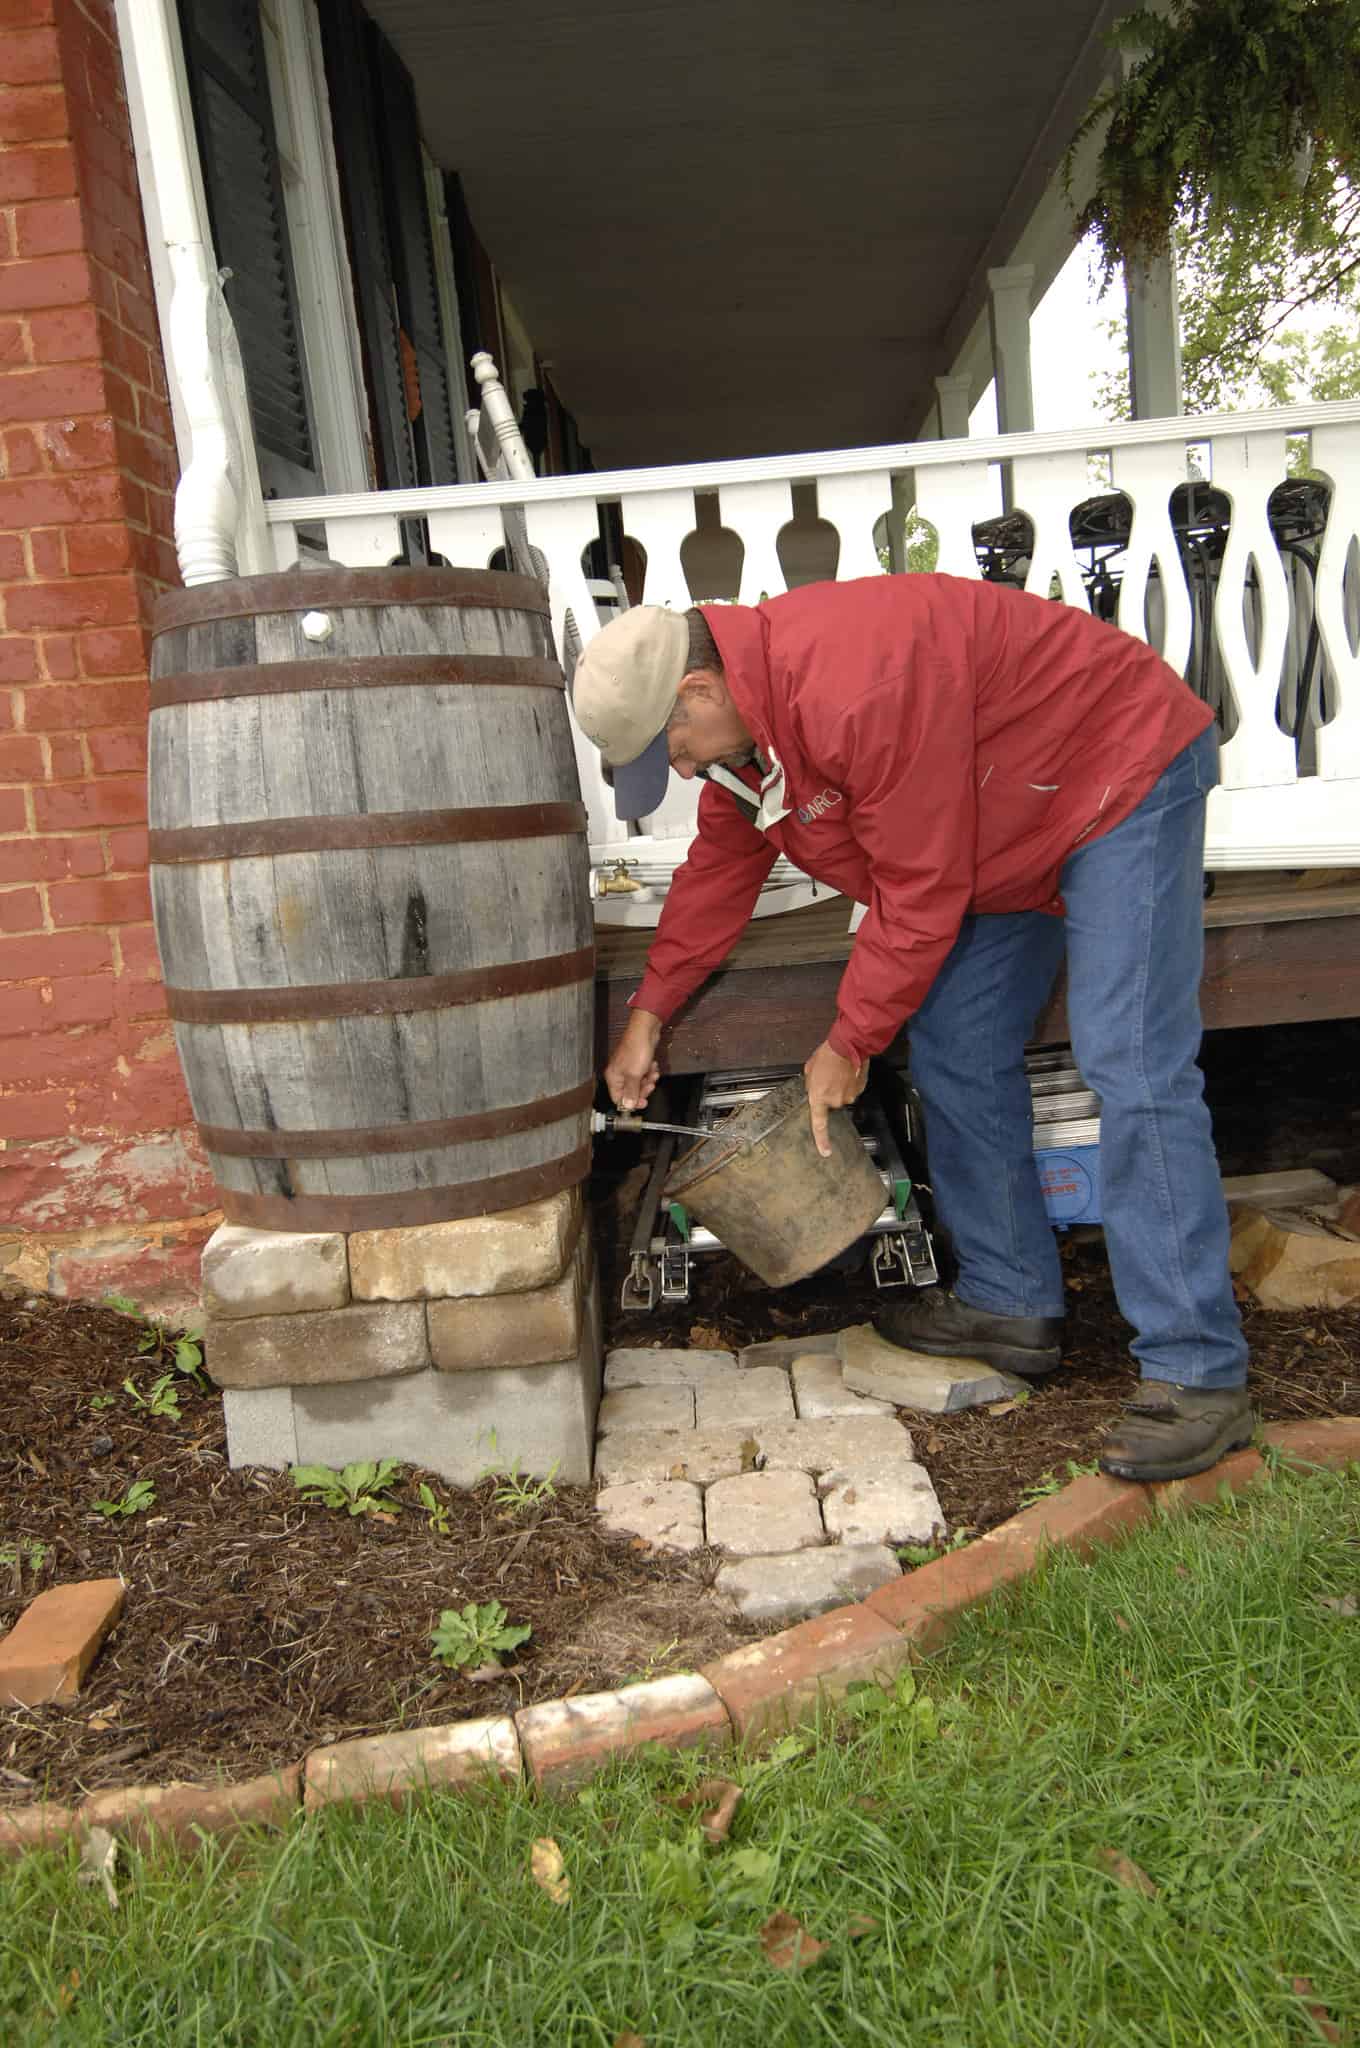 A man pouring rain water in a bucket #rainWater #garden #gardening #gardenTips #gardencare #gardenTools